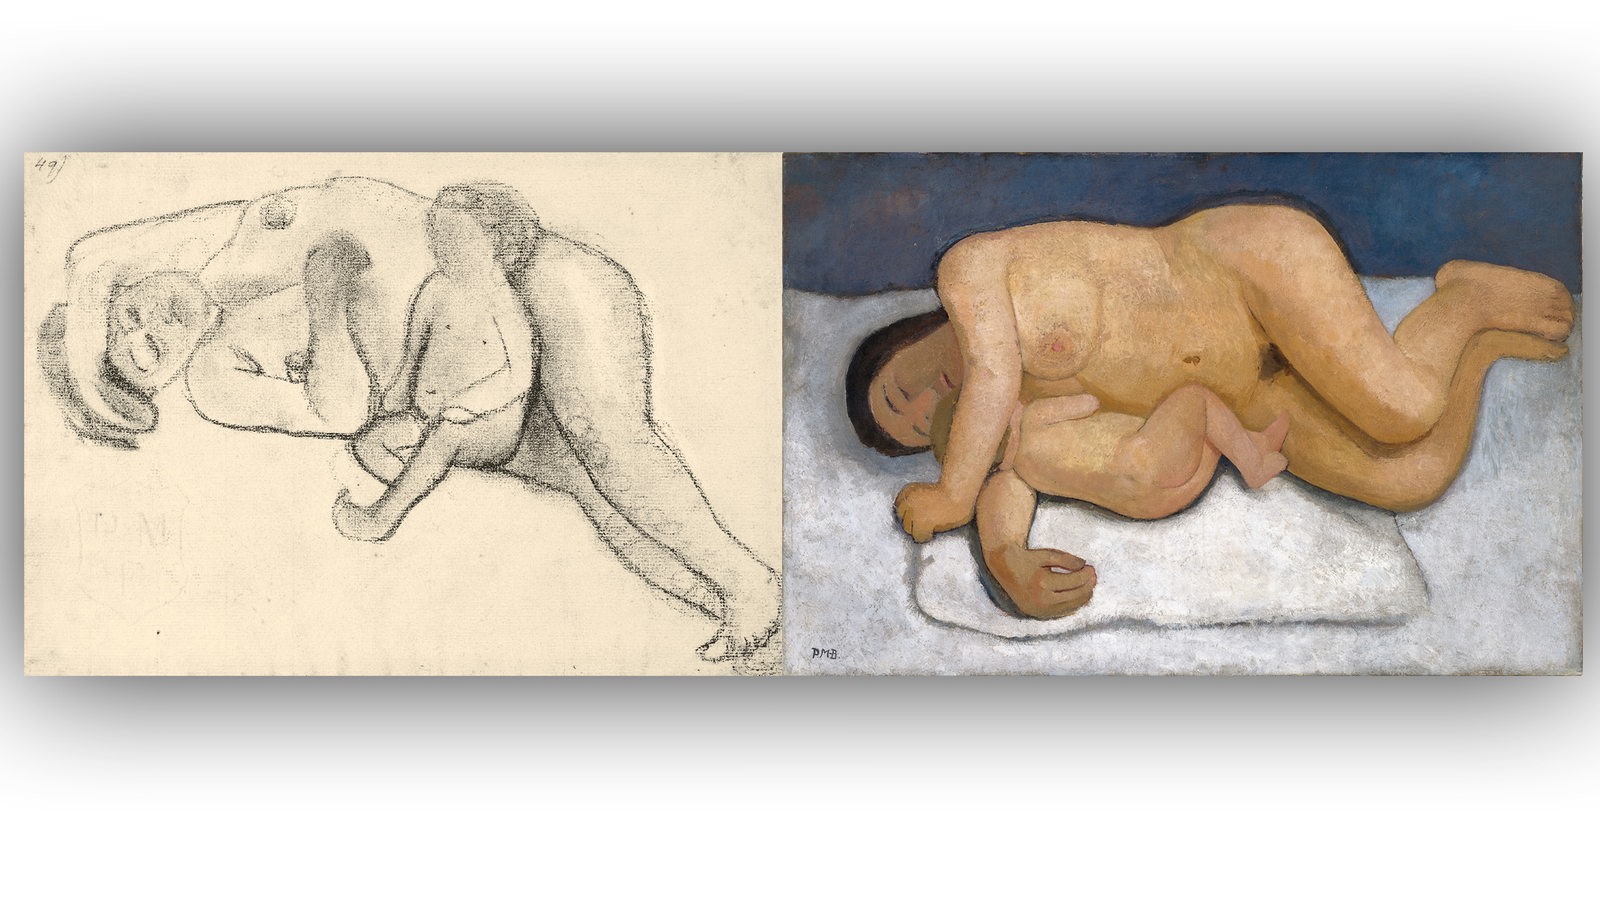 Bildmontage zeigt die Bilder von Paula-Modersohn-Becker: "Liegender weiblicher Akt mit sitzendem Kind" (Kohlezeichnung) und "Liegende Mutter mit Kind II" (Öl auf Leinwand) nebeneinander